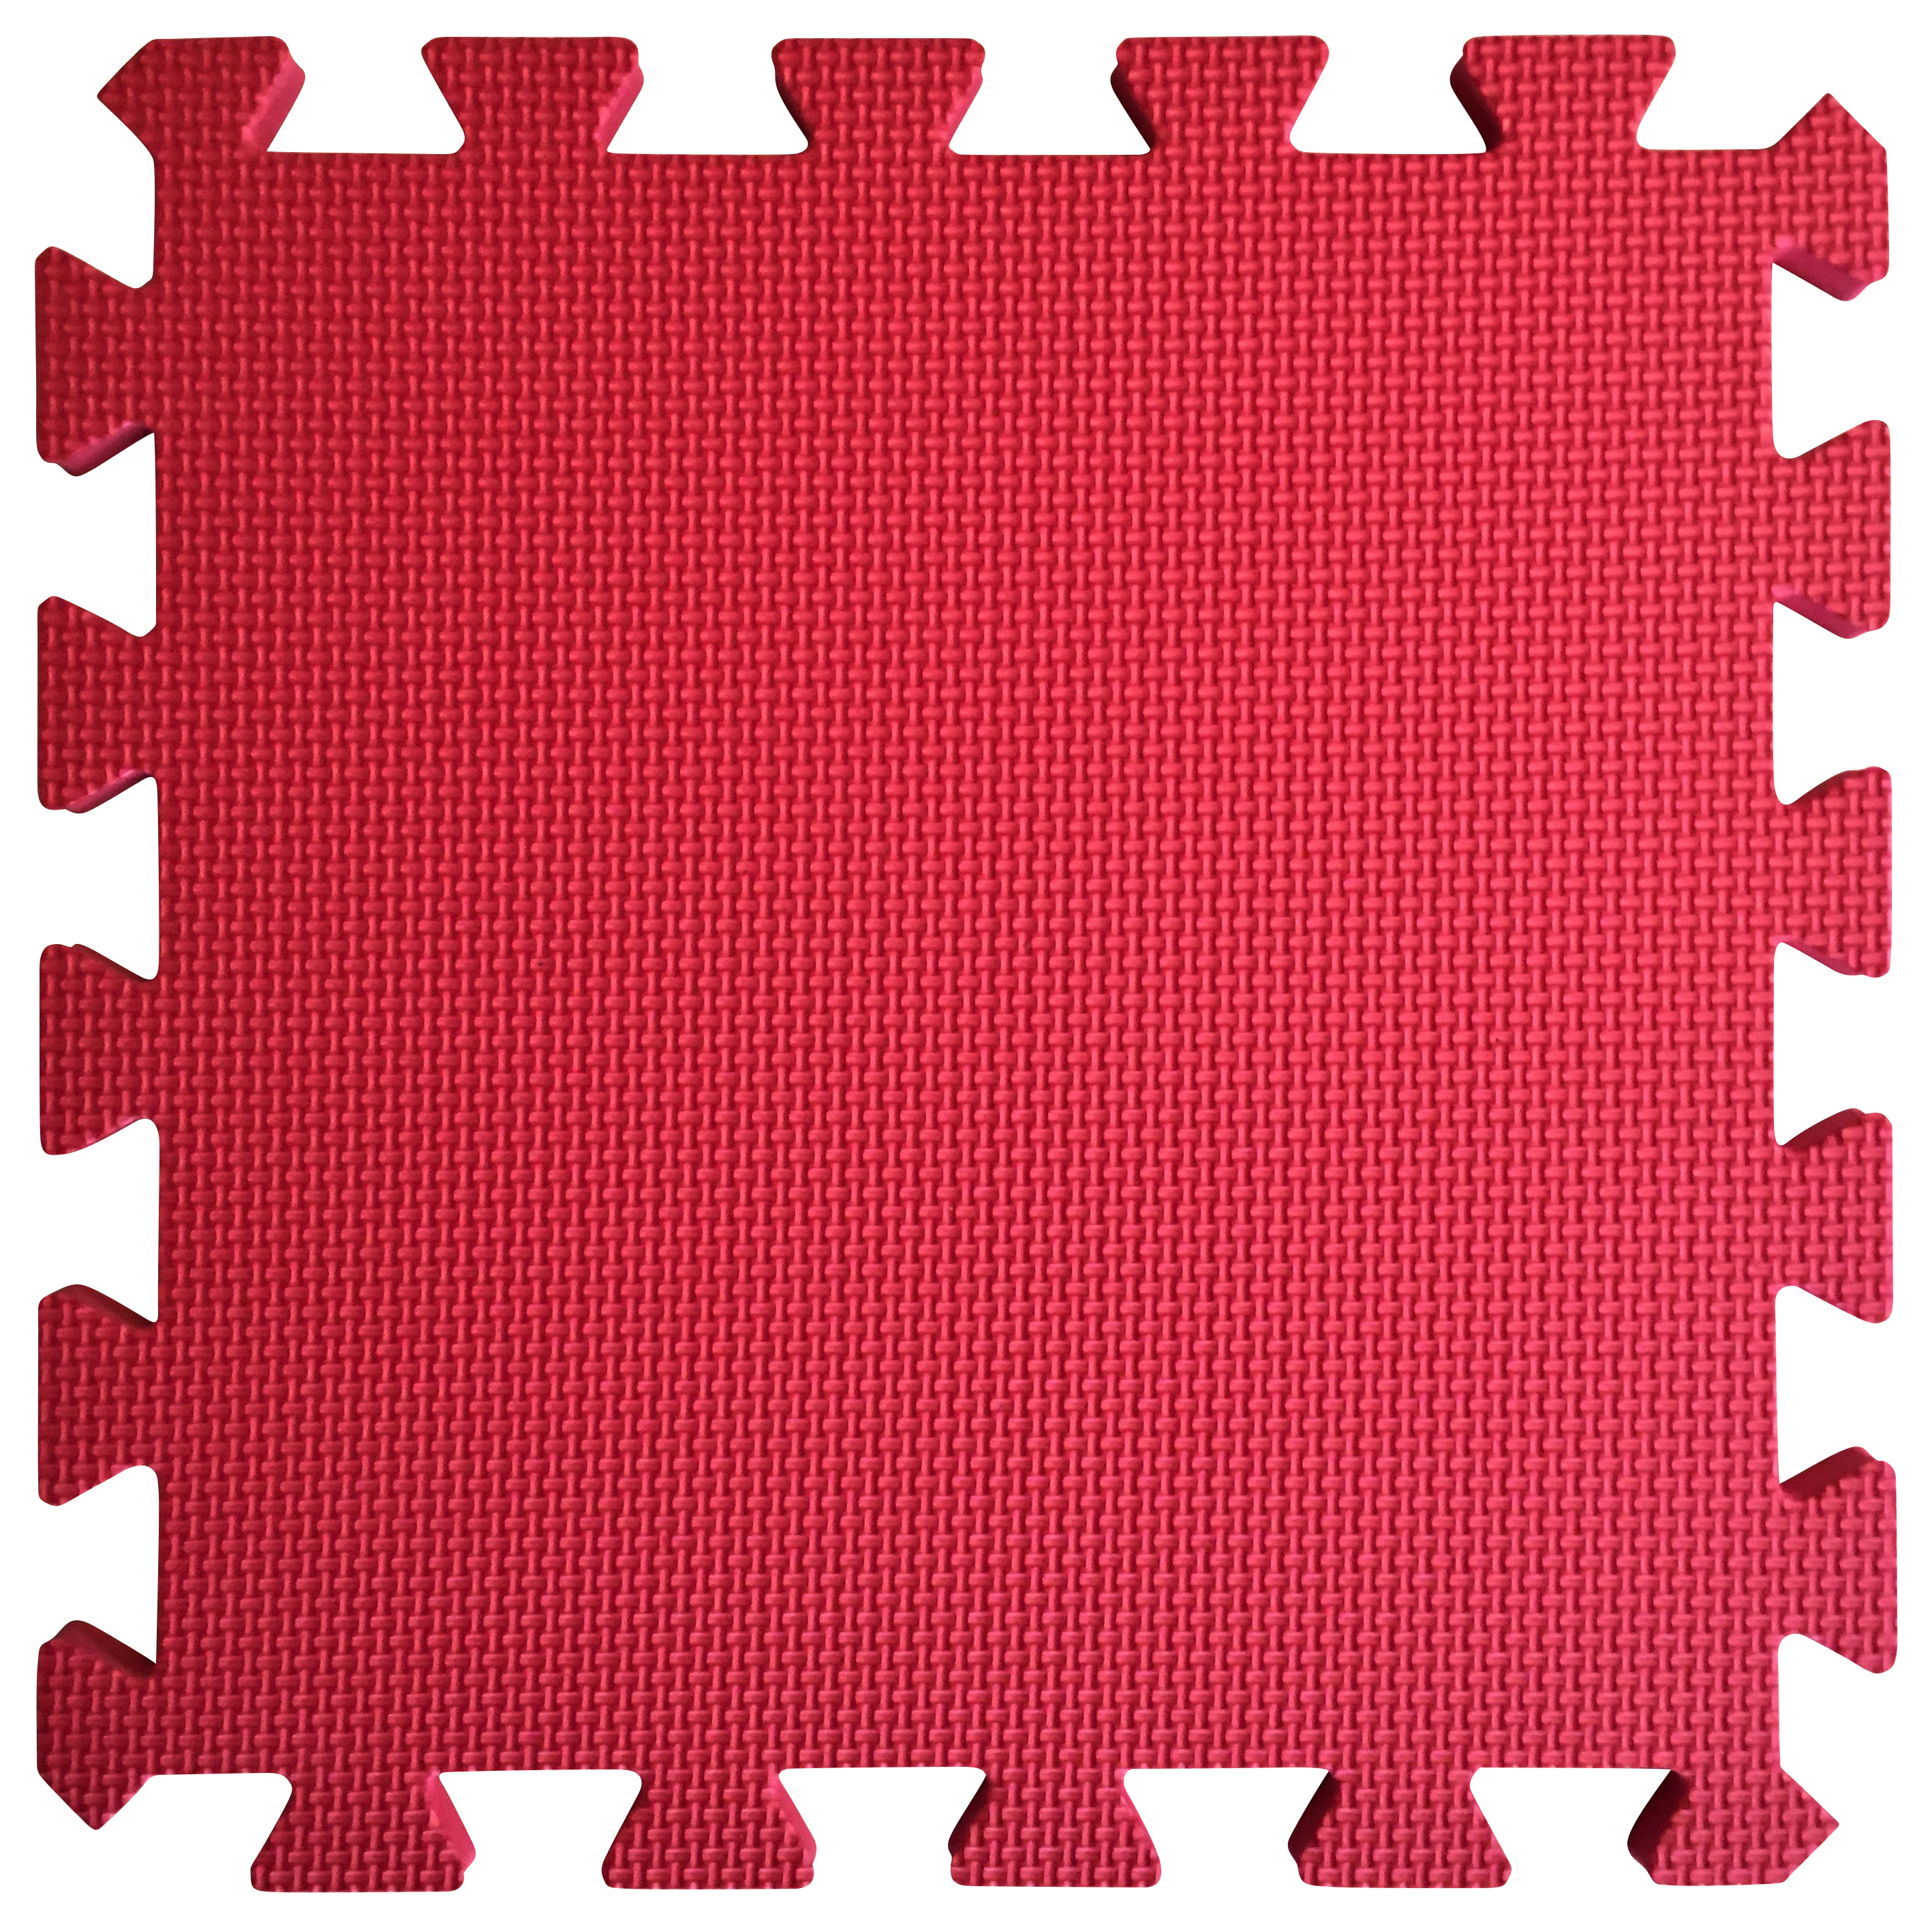 Warm Floor Red Interlocking Floor Tiles for Garden Buildings - 3 x 4ft